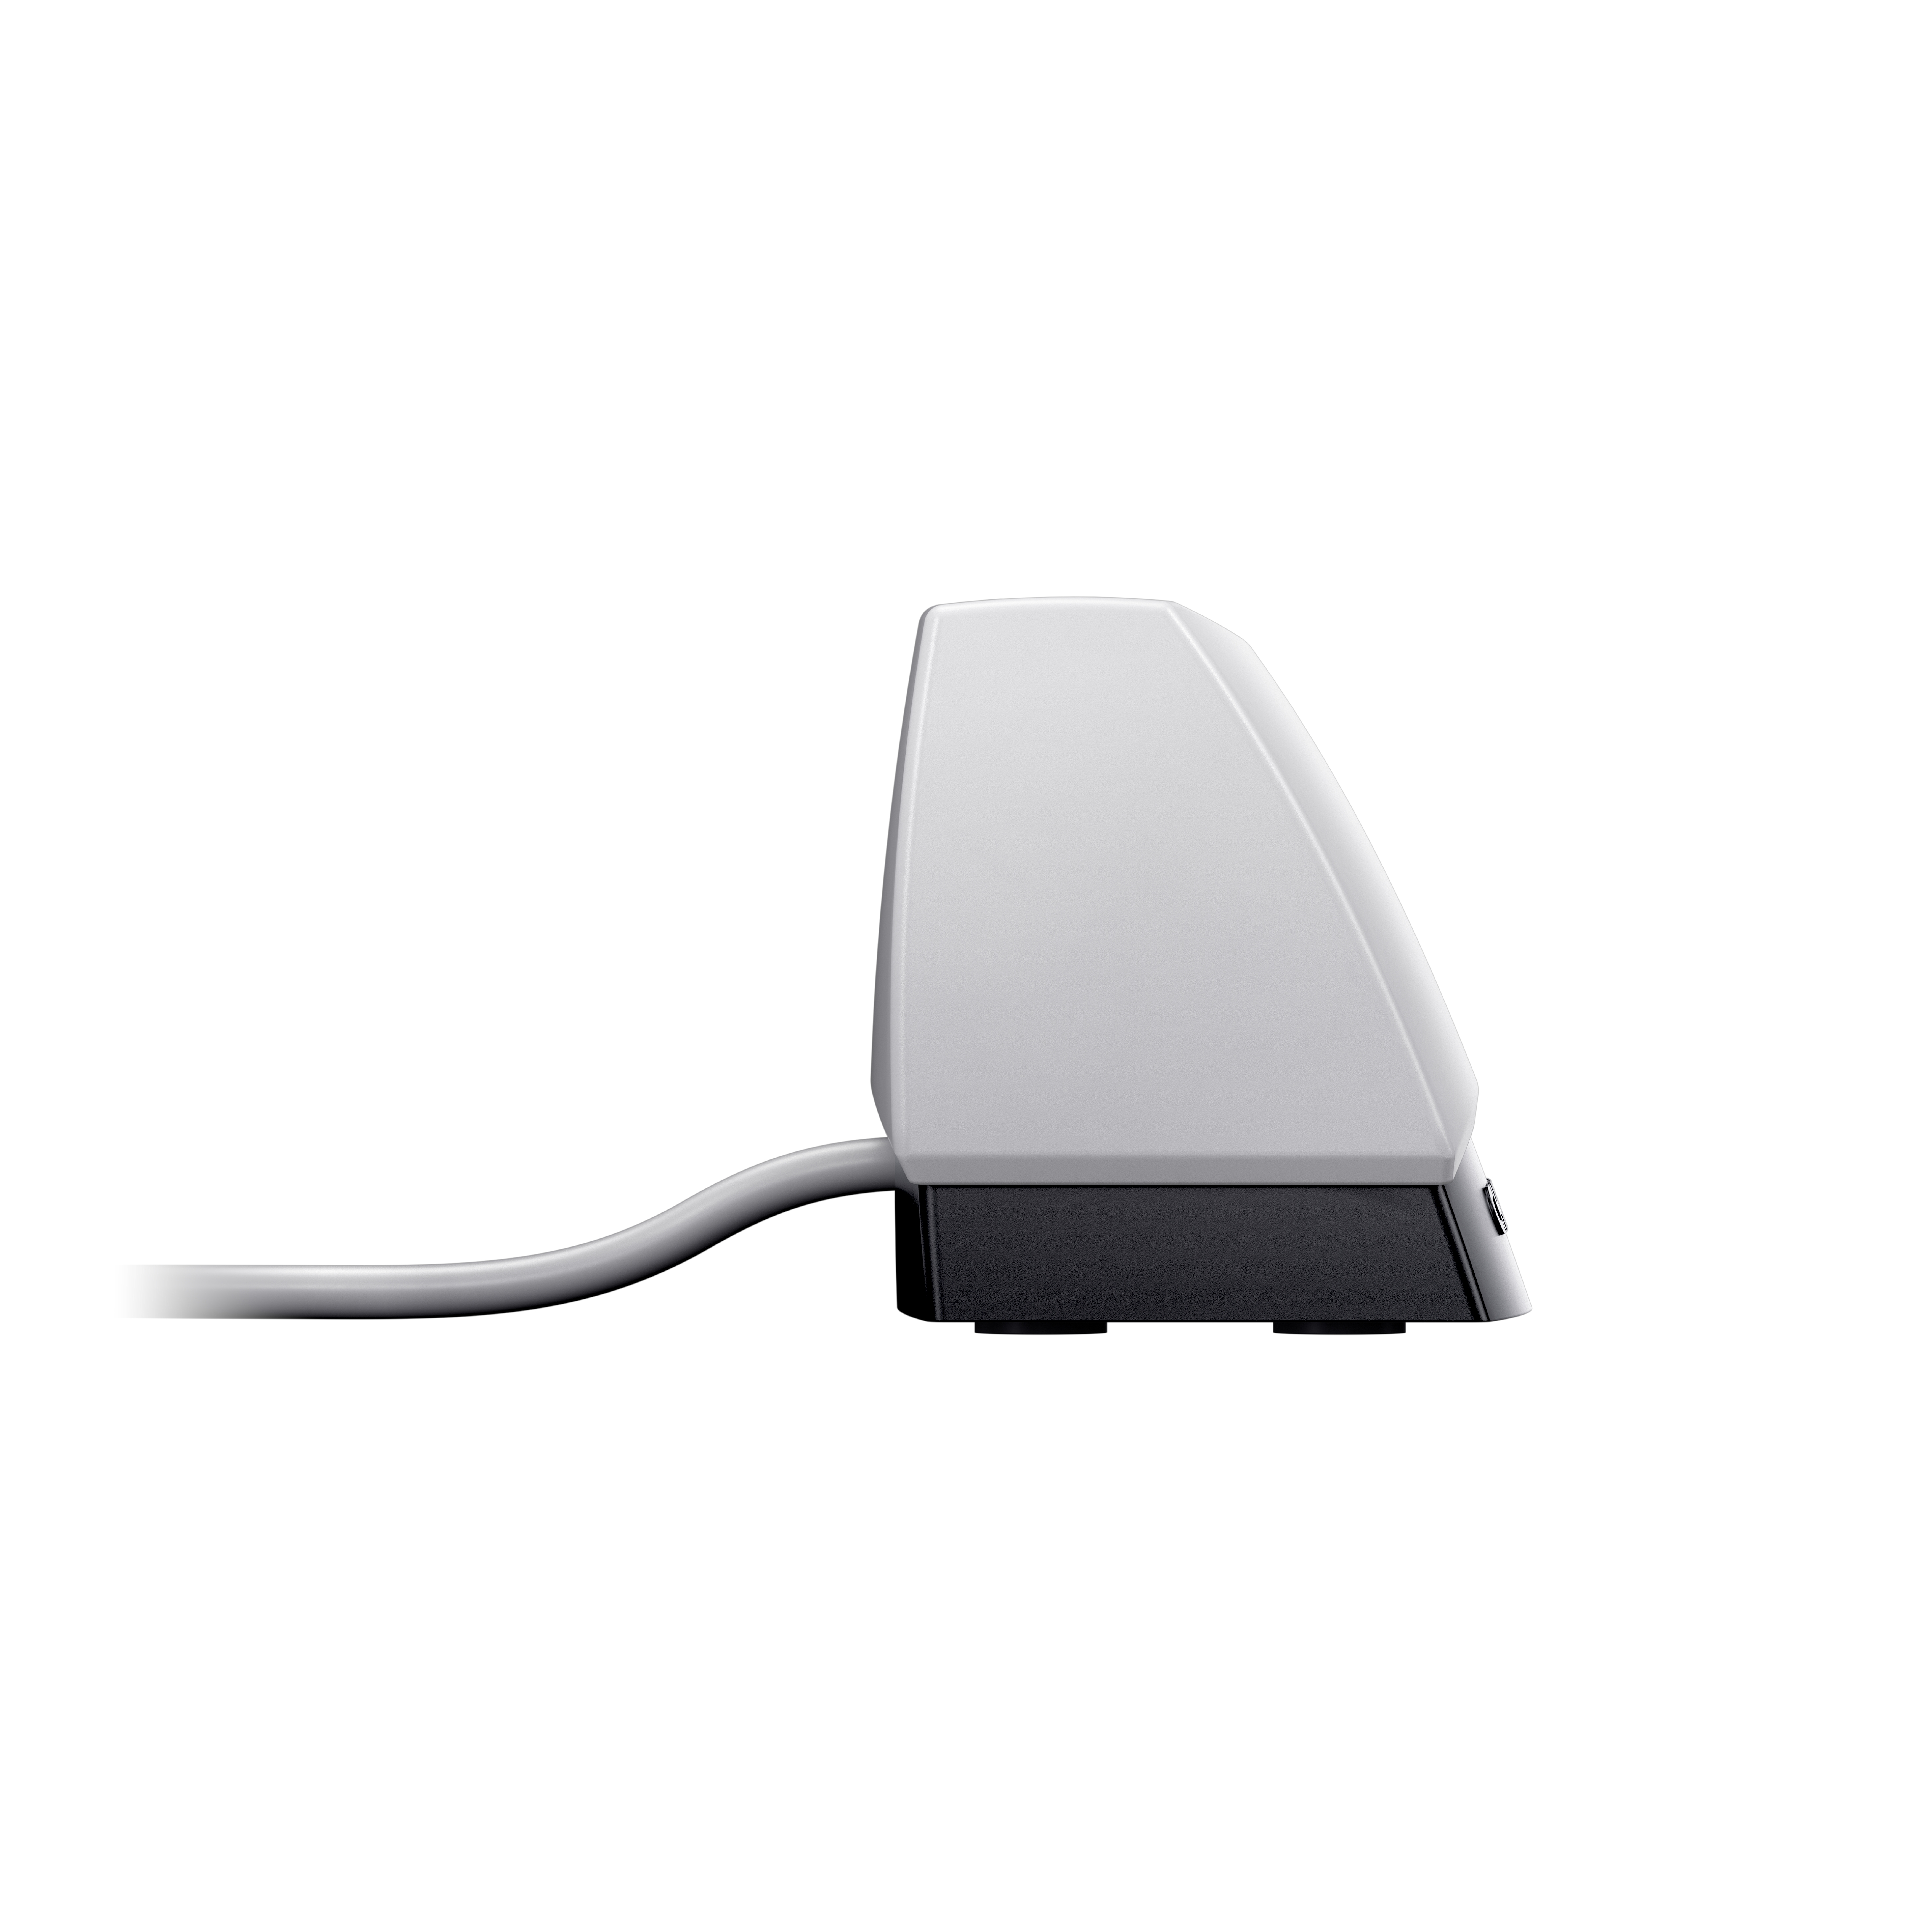 Cherry SmartTerminal ST-1144 - SmartCard-Leser - USB 2.0 - weiß (Oberteil)